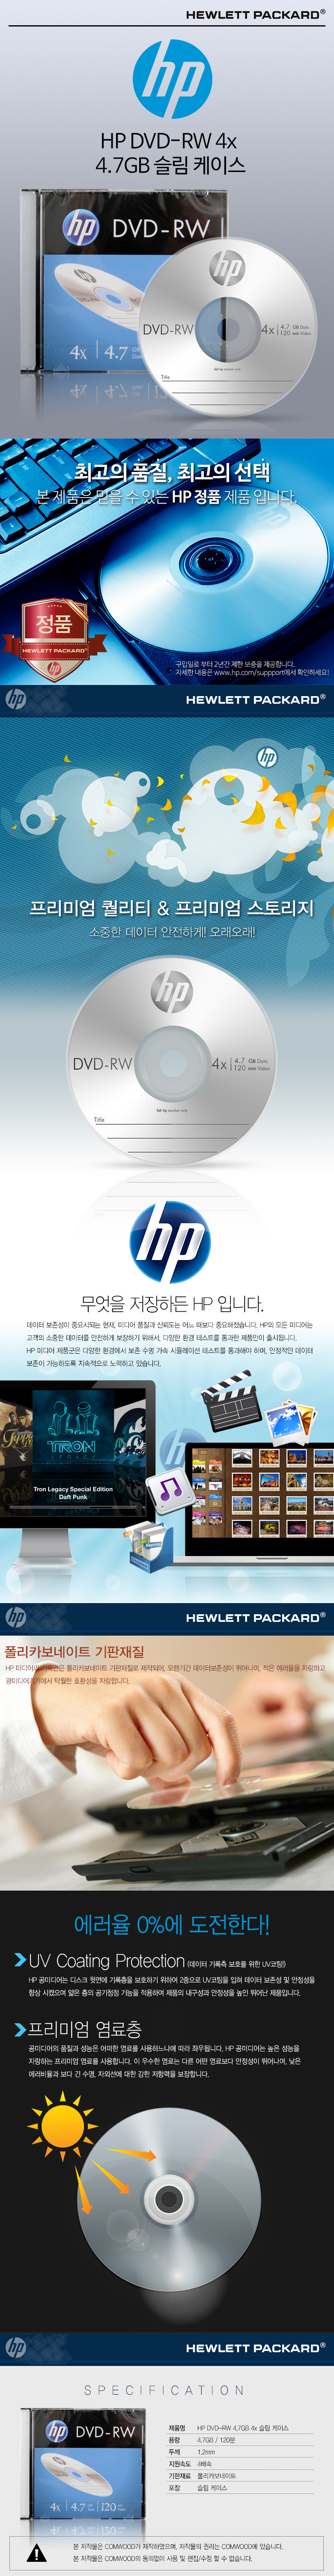 HP-DVD-RW-47GB-4x-slim.jpg